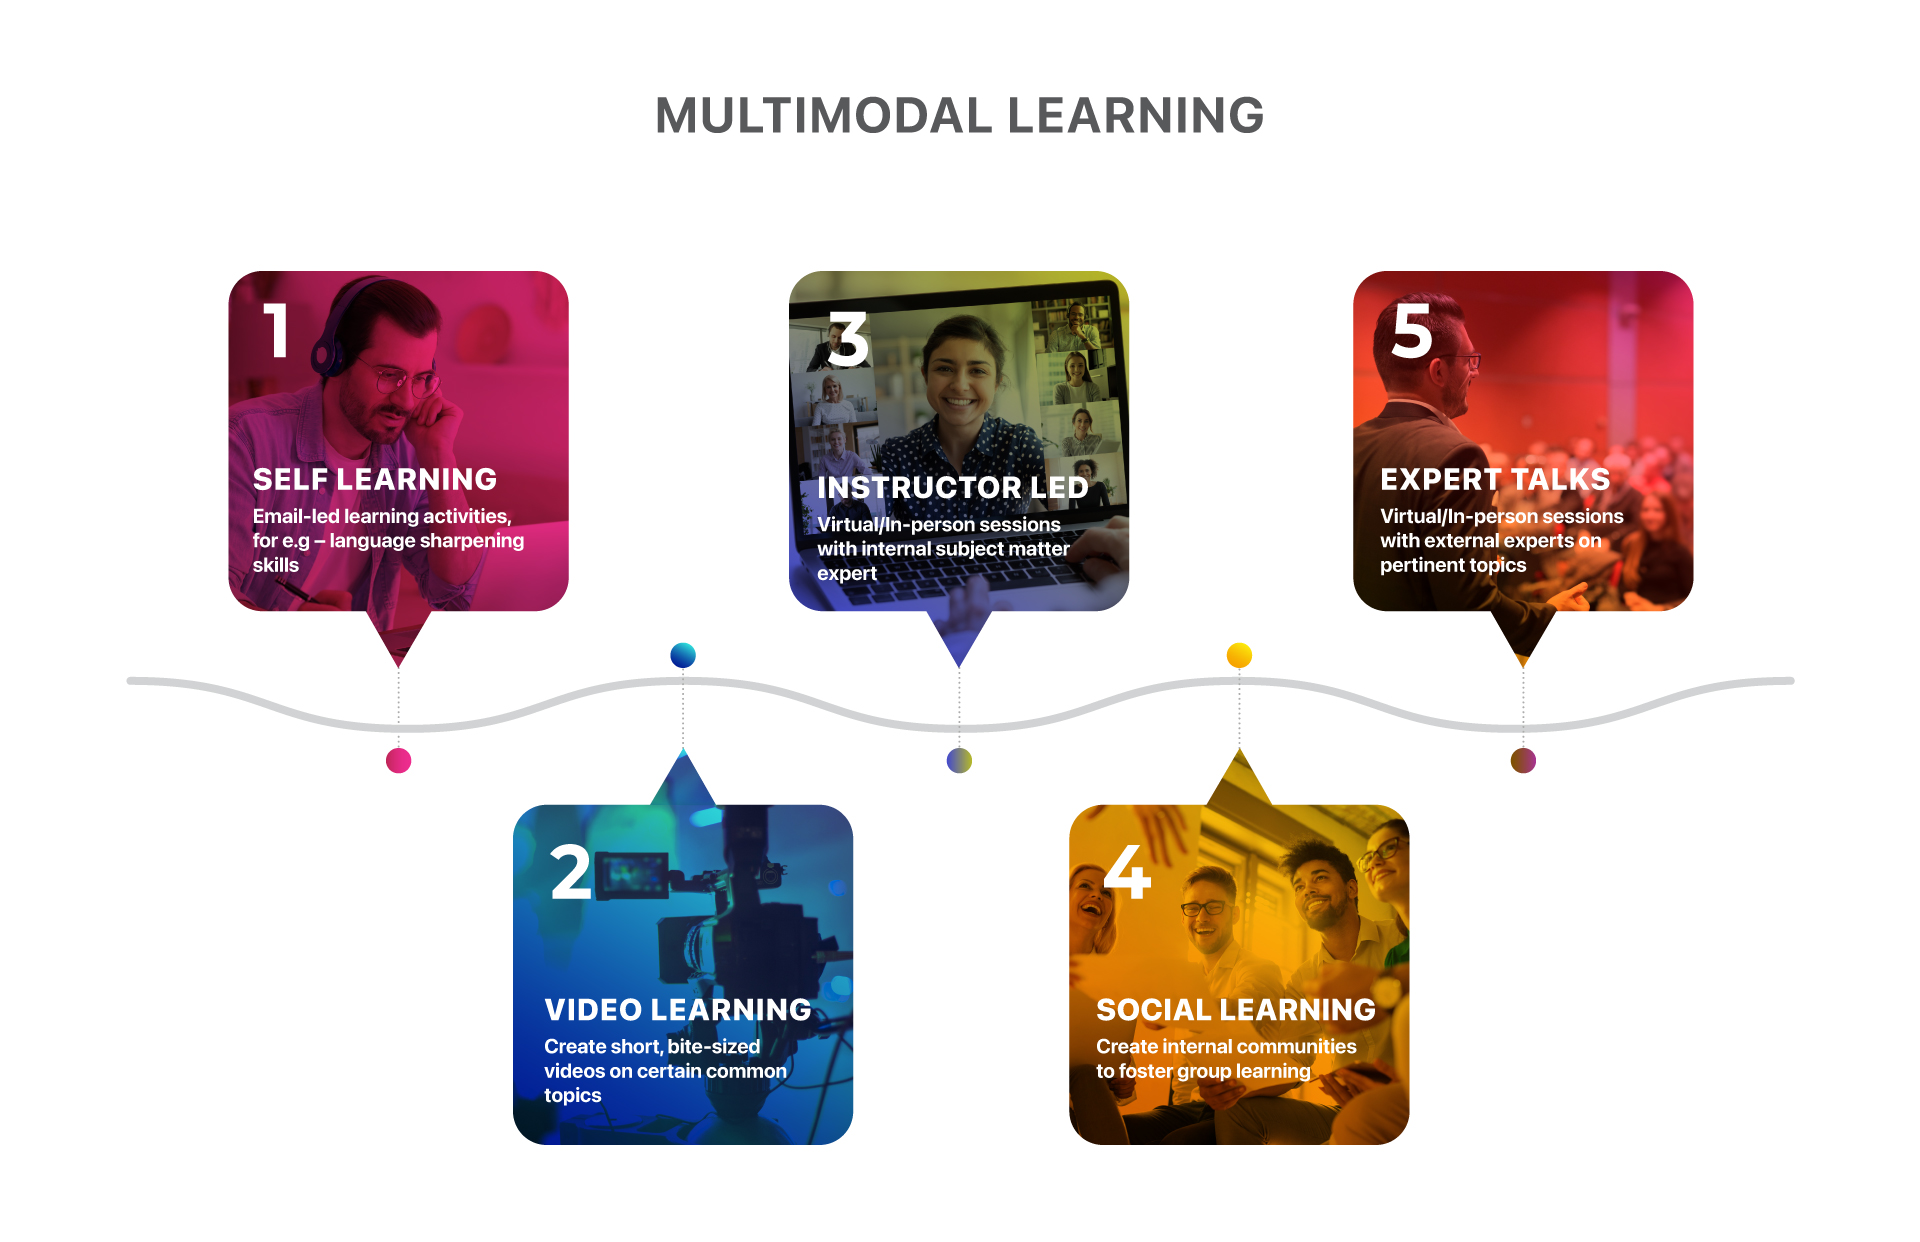 Multimodal learning